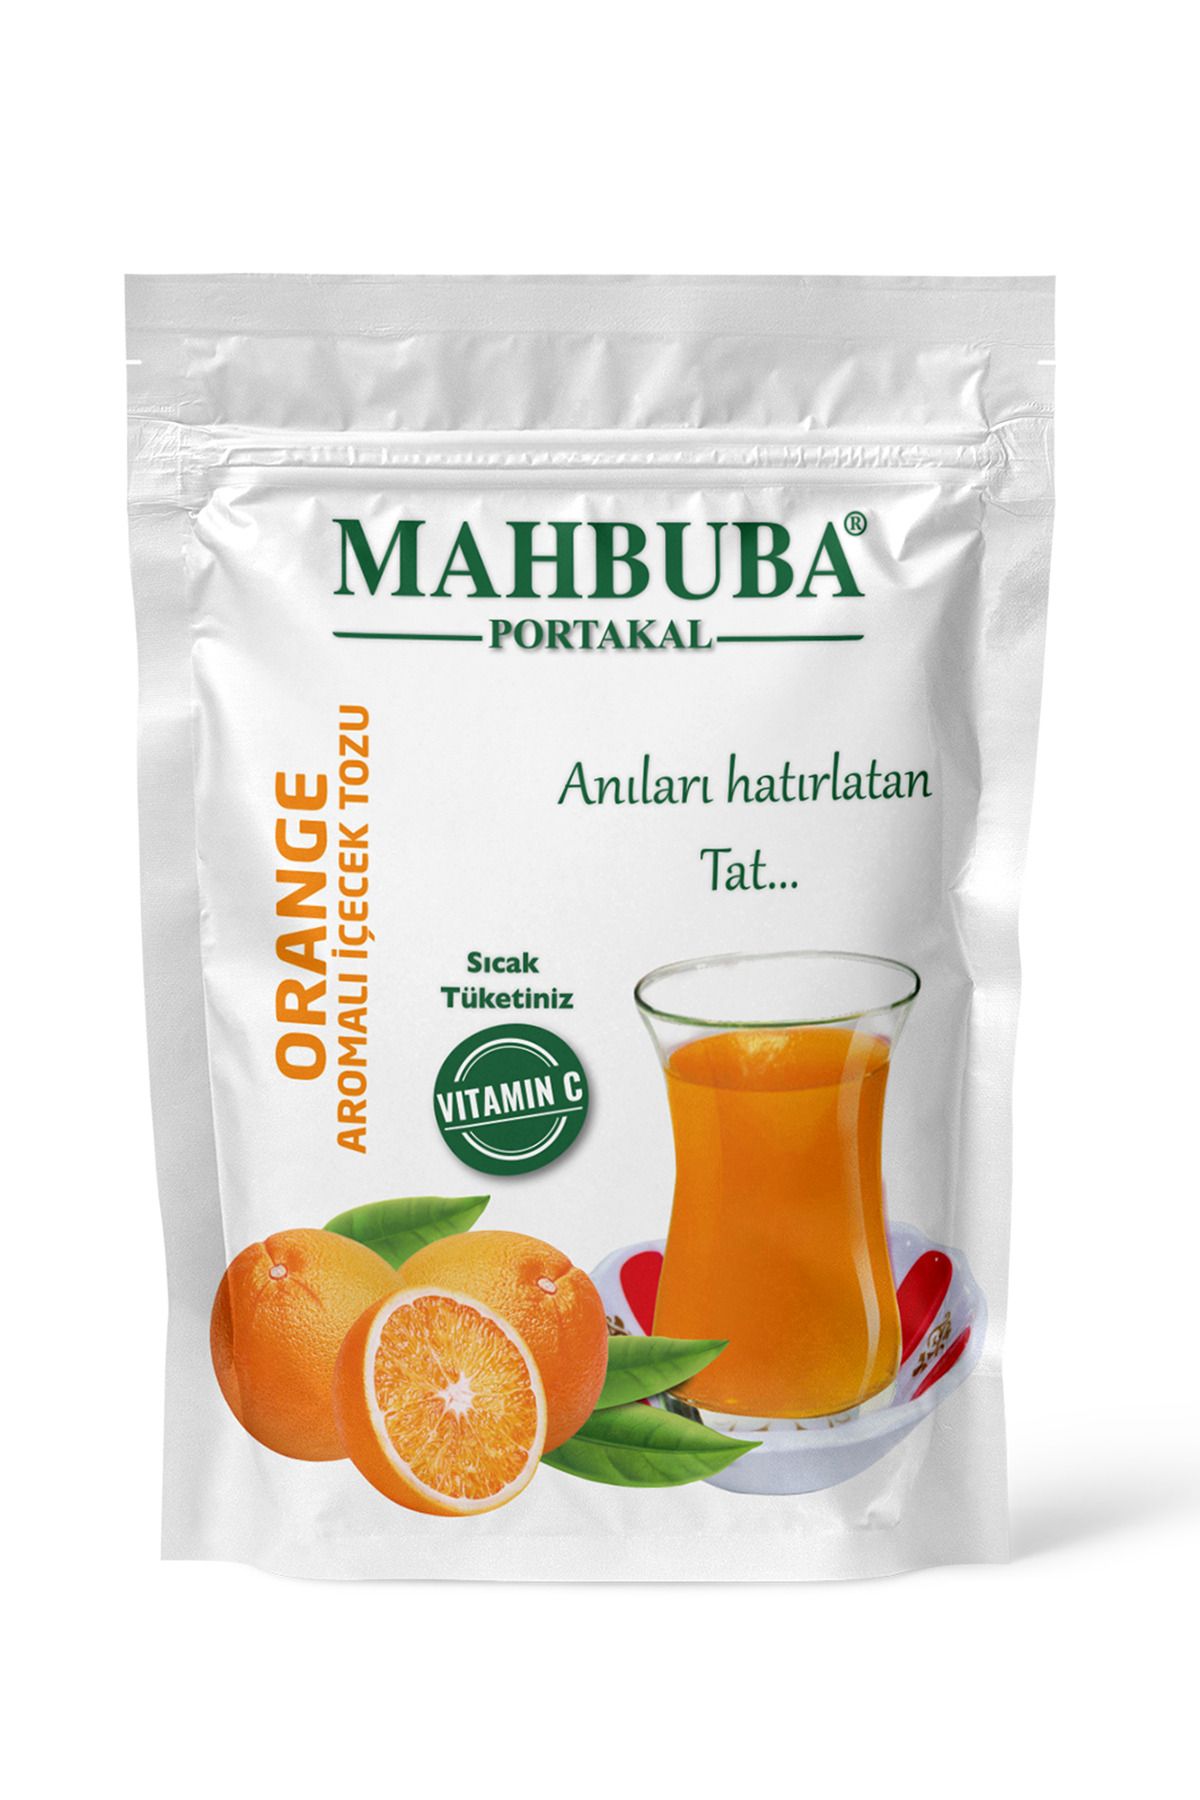 Mahbuba Portakal Aromalı Oralet Çayı İçecek Tozu 250gr Hot Drink Sıcak Tüketiniz